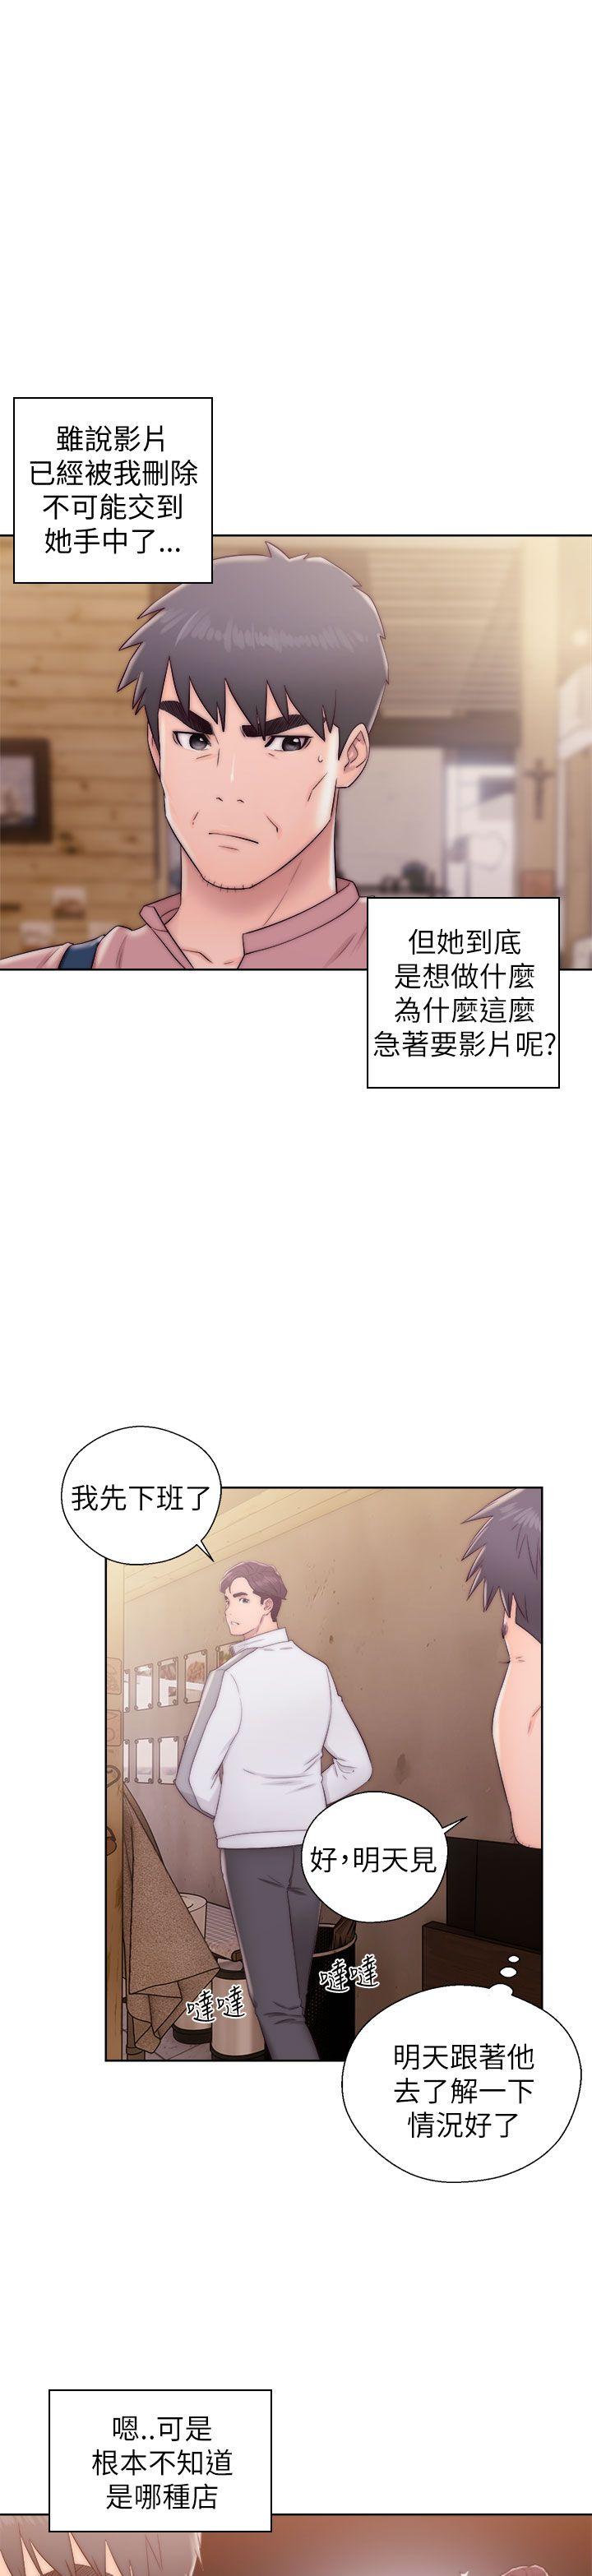 韩国污漫画 青春:逆齡小鮮肉 第13话 12